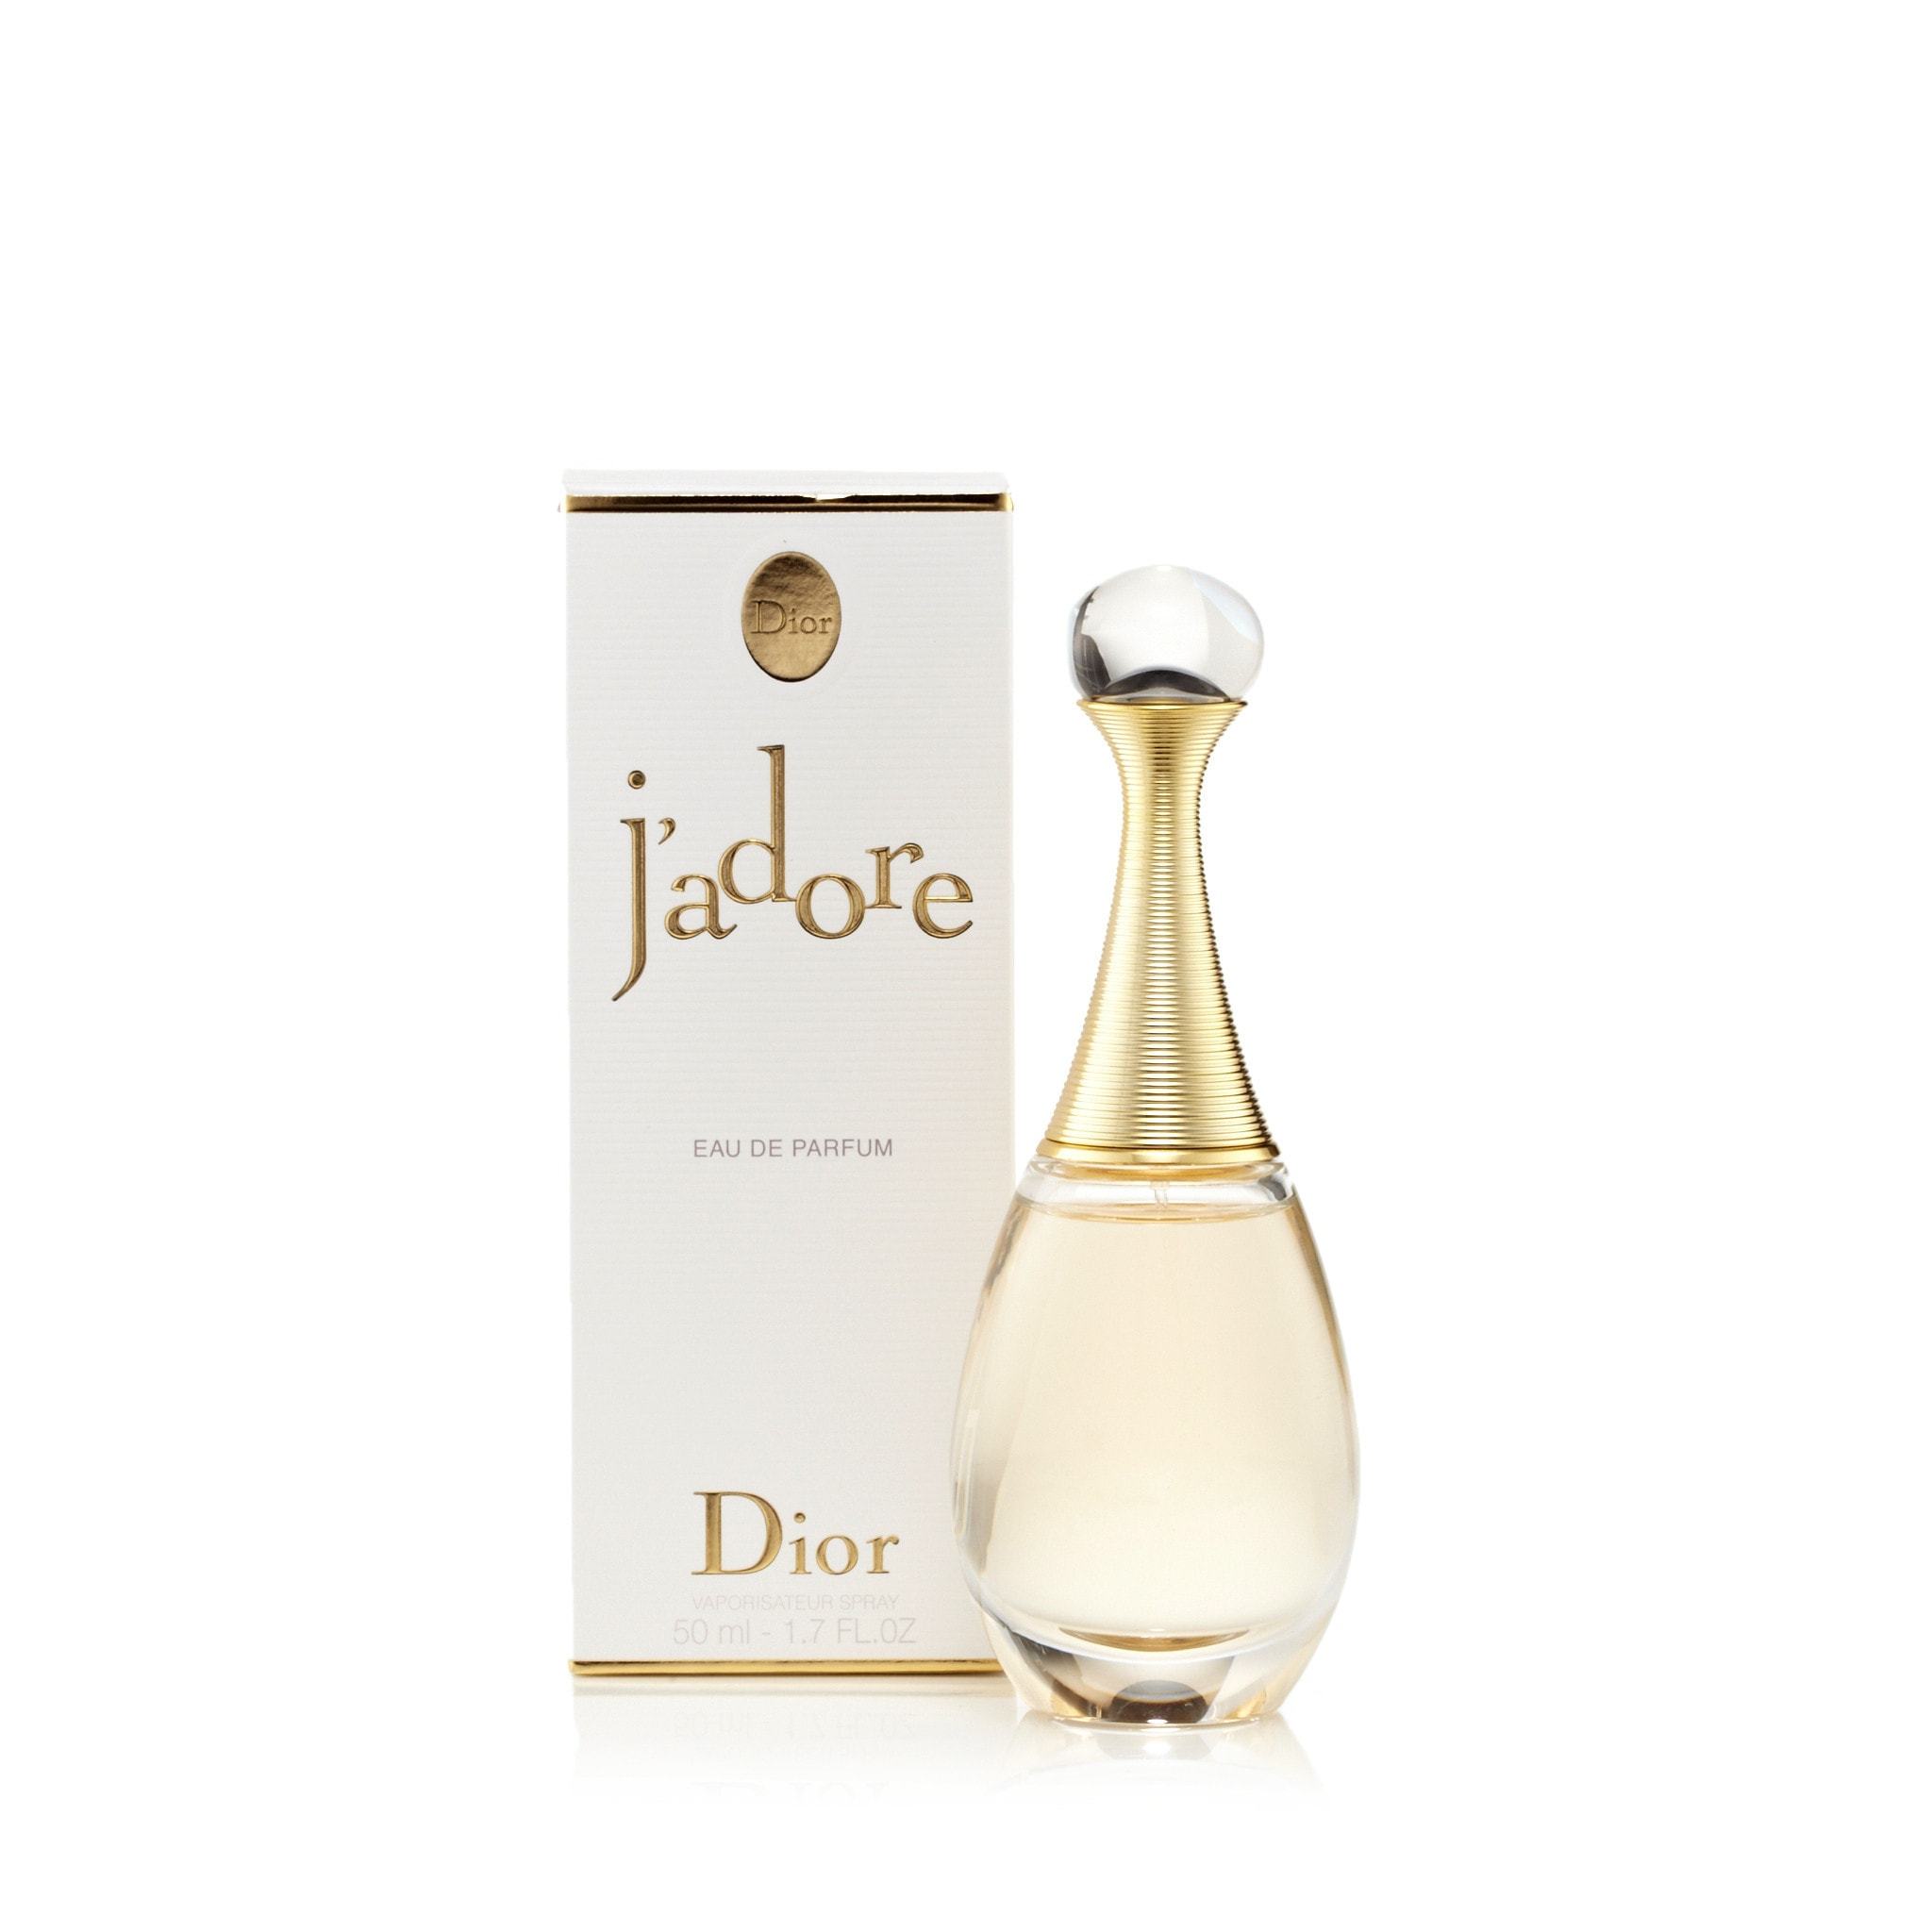 Nước hoa Dior Jadore Eau De Parfum 5ml  Mùi Hương Cổ Điển Hiện Đại